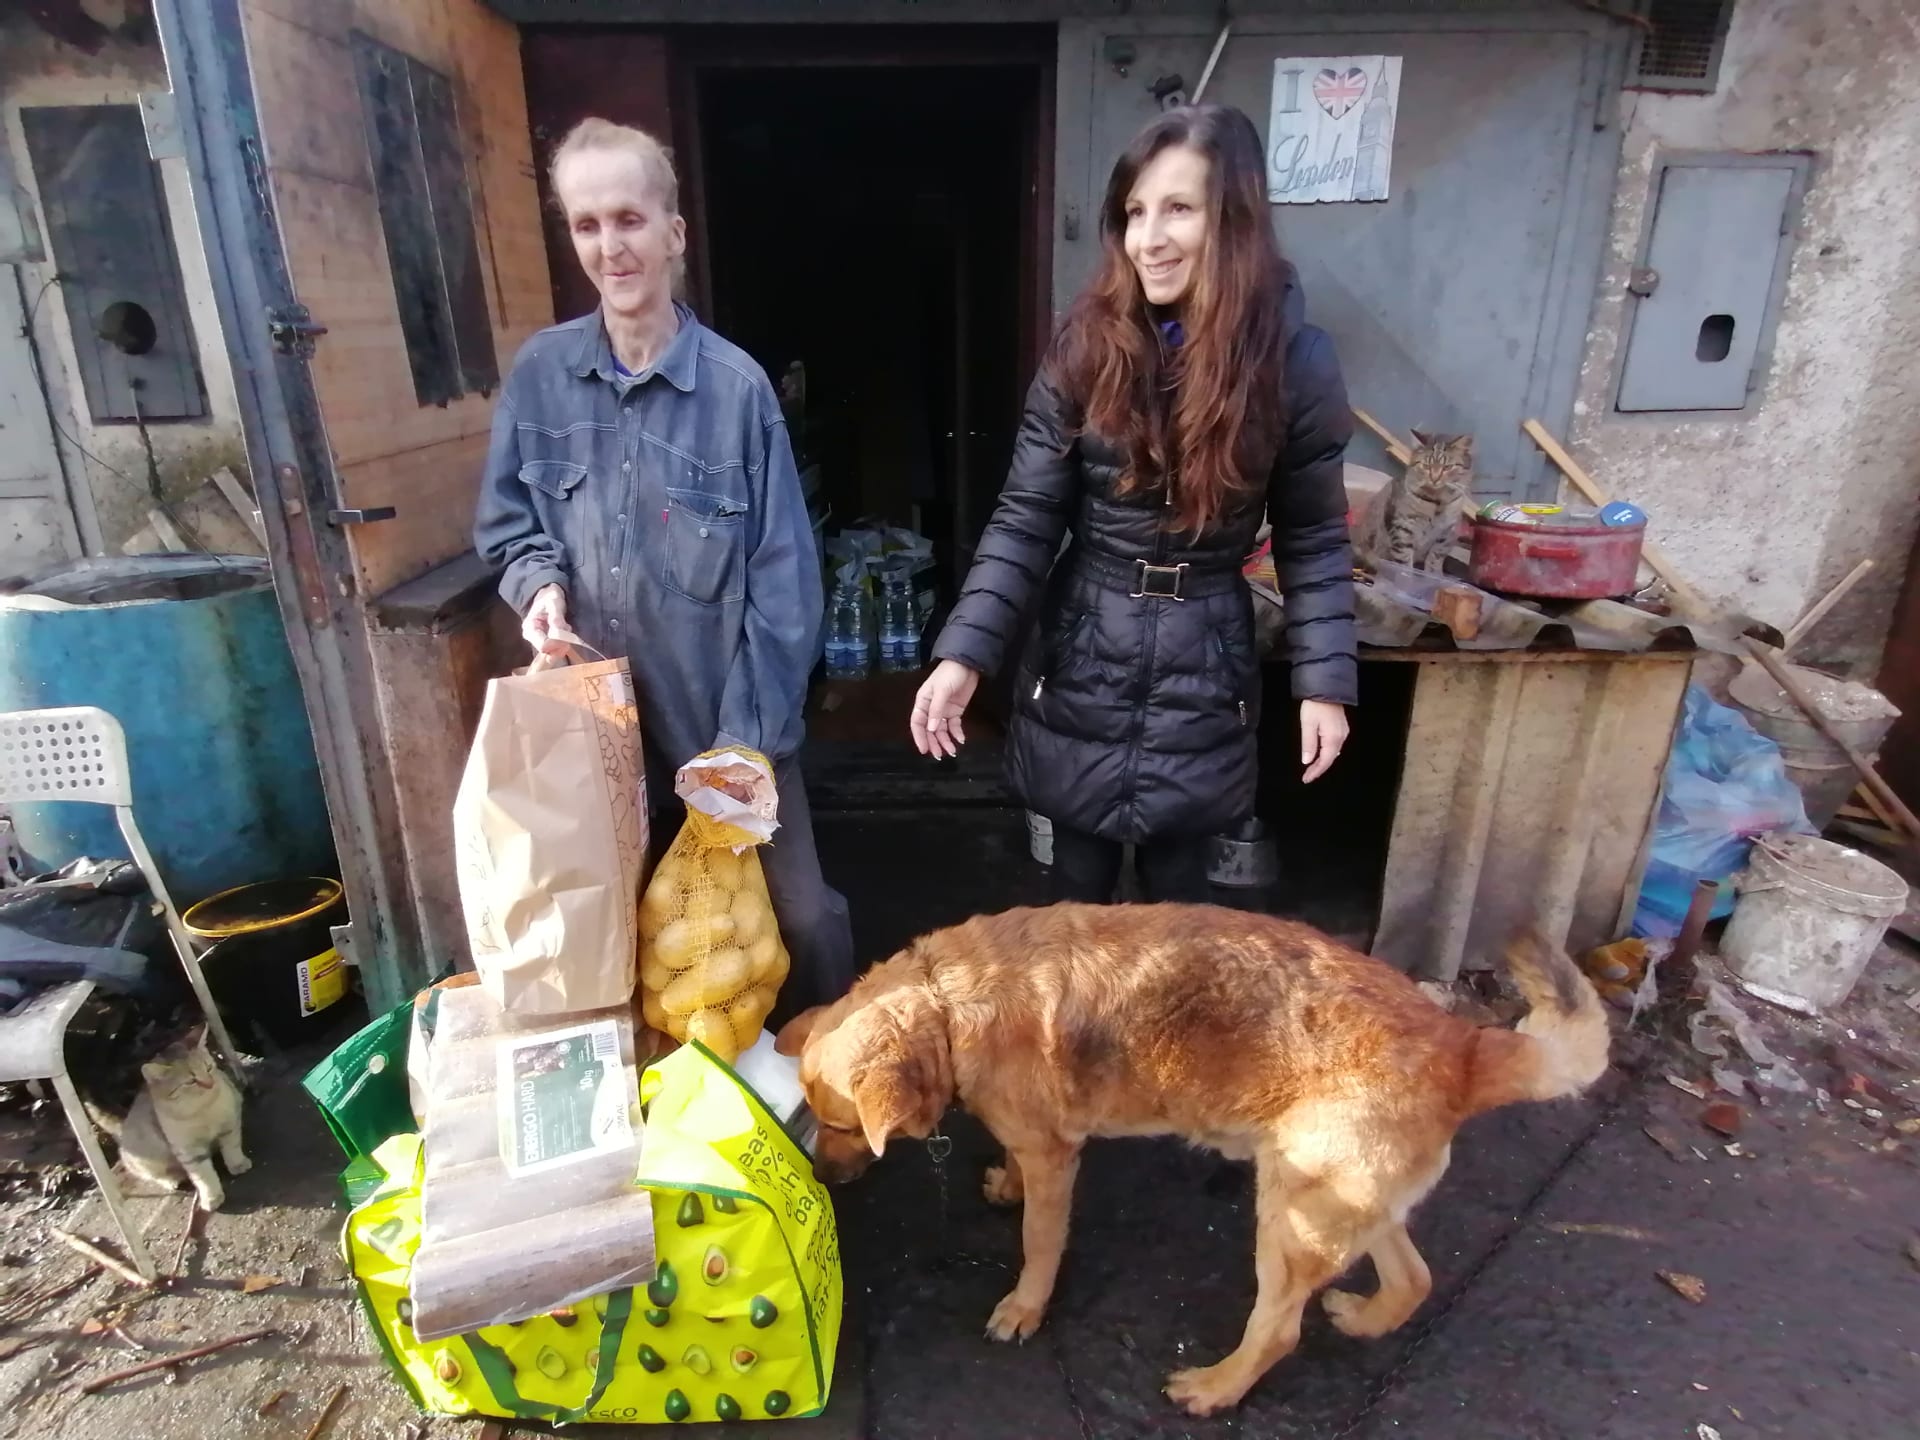 Čtenářky CNN Prima NEWS přivezly na silvestra Dagmar Palákové potravinovou pomoc. Pro ženu bez domova i její početná zvířata.